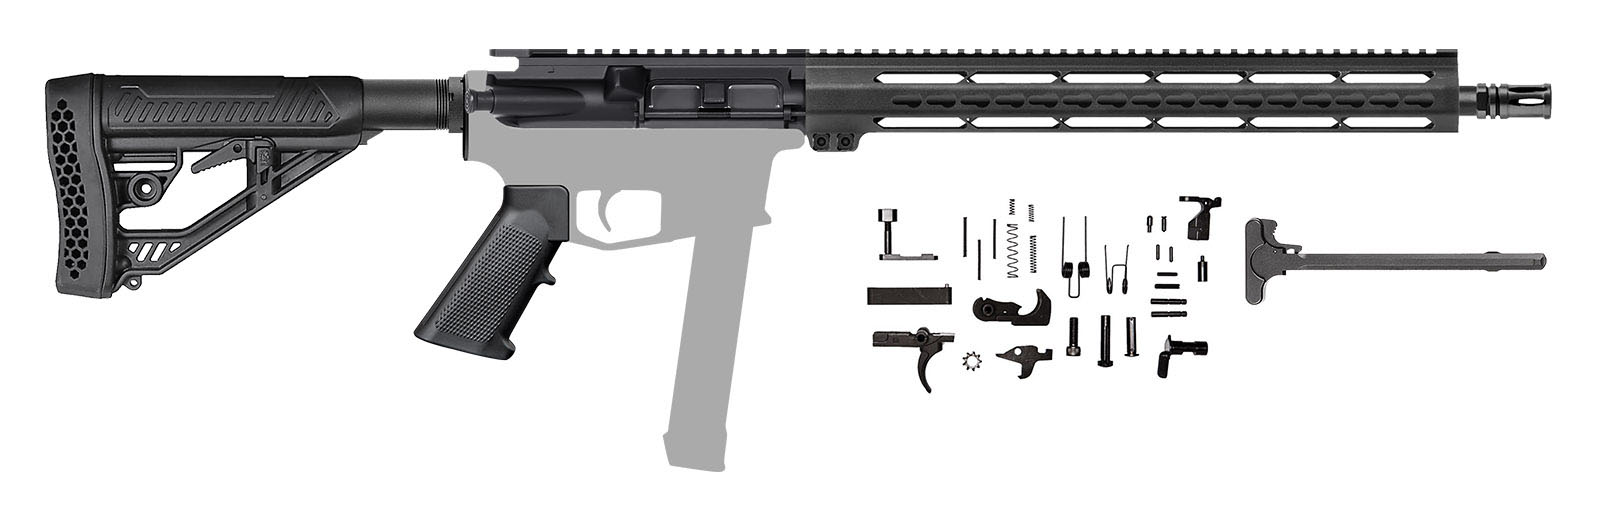 ar9-blemished-rifle-kit